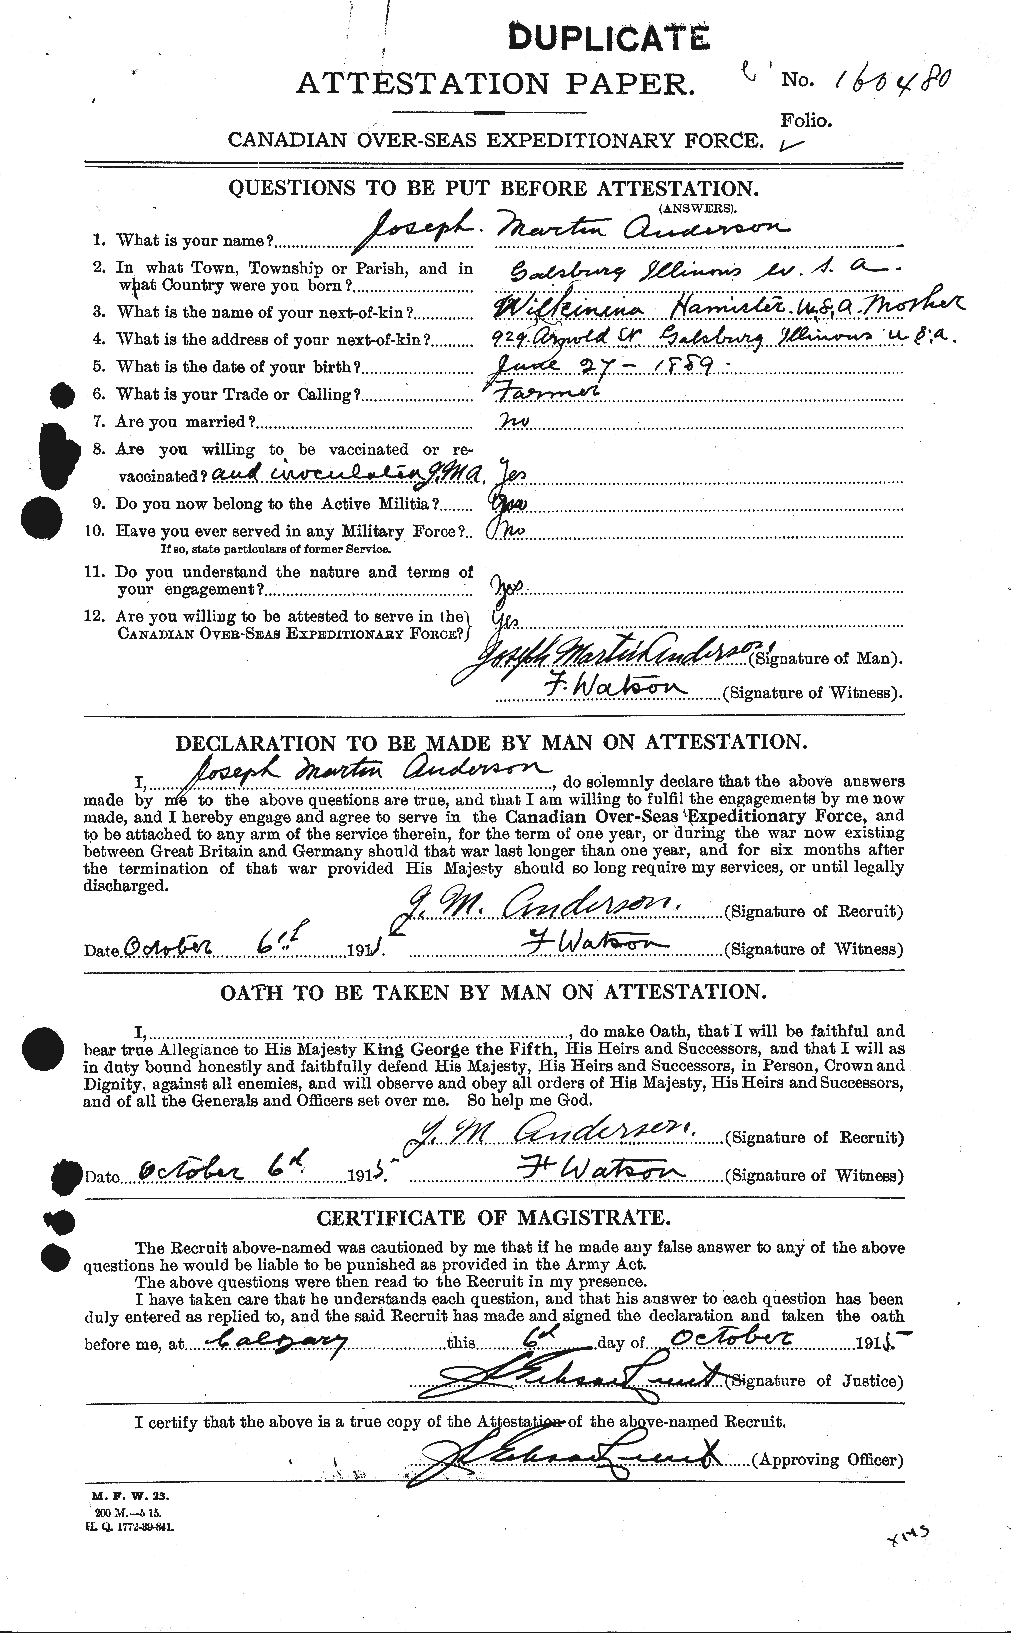 Dossiers du Personnel de la Première Guerre mondiale - CEC 207560a